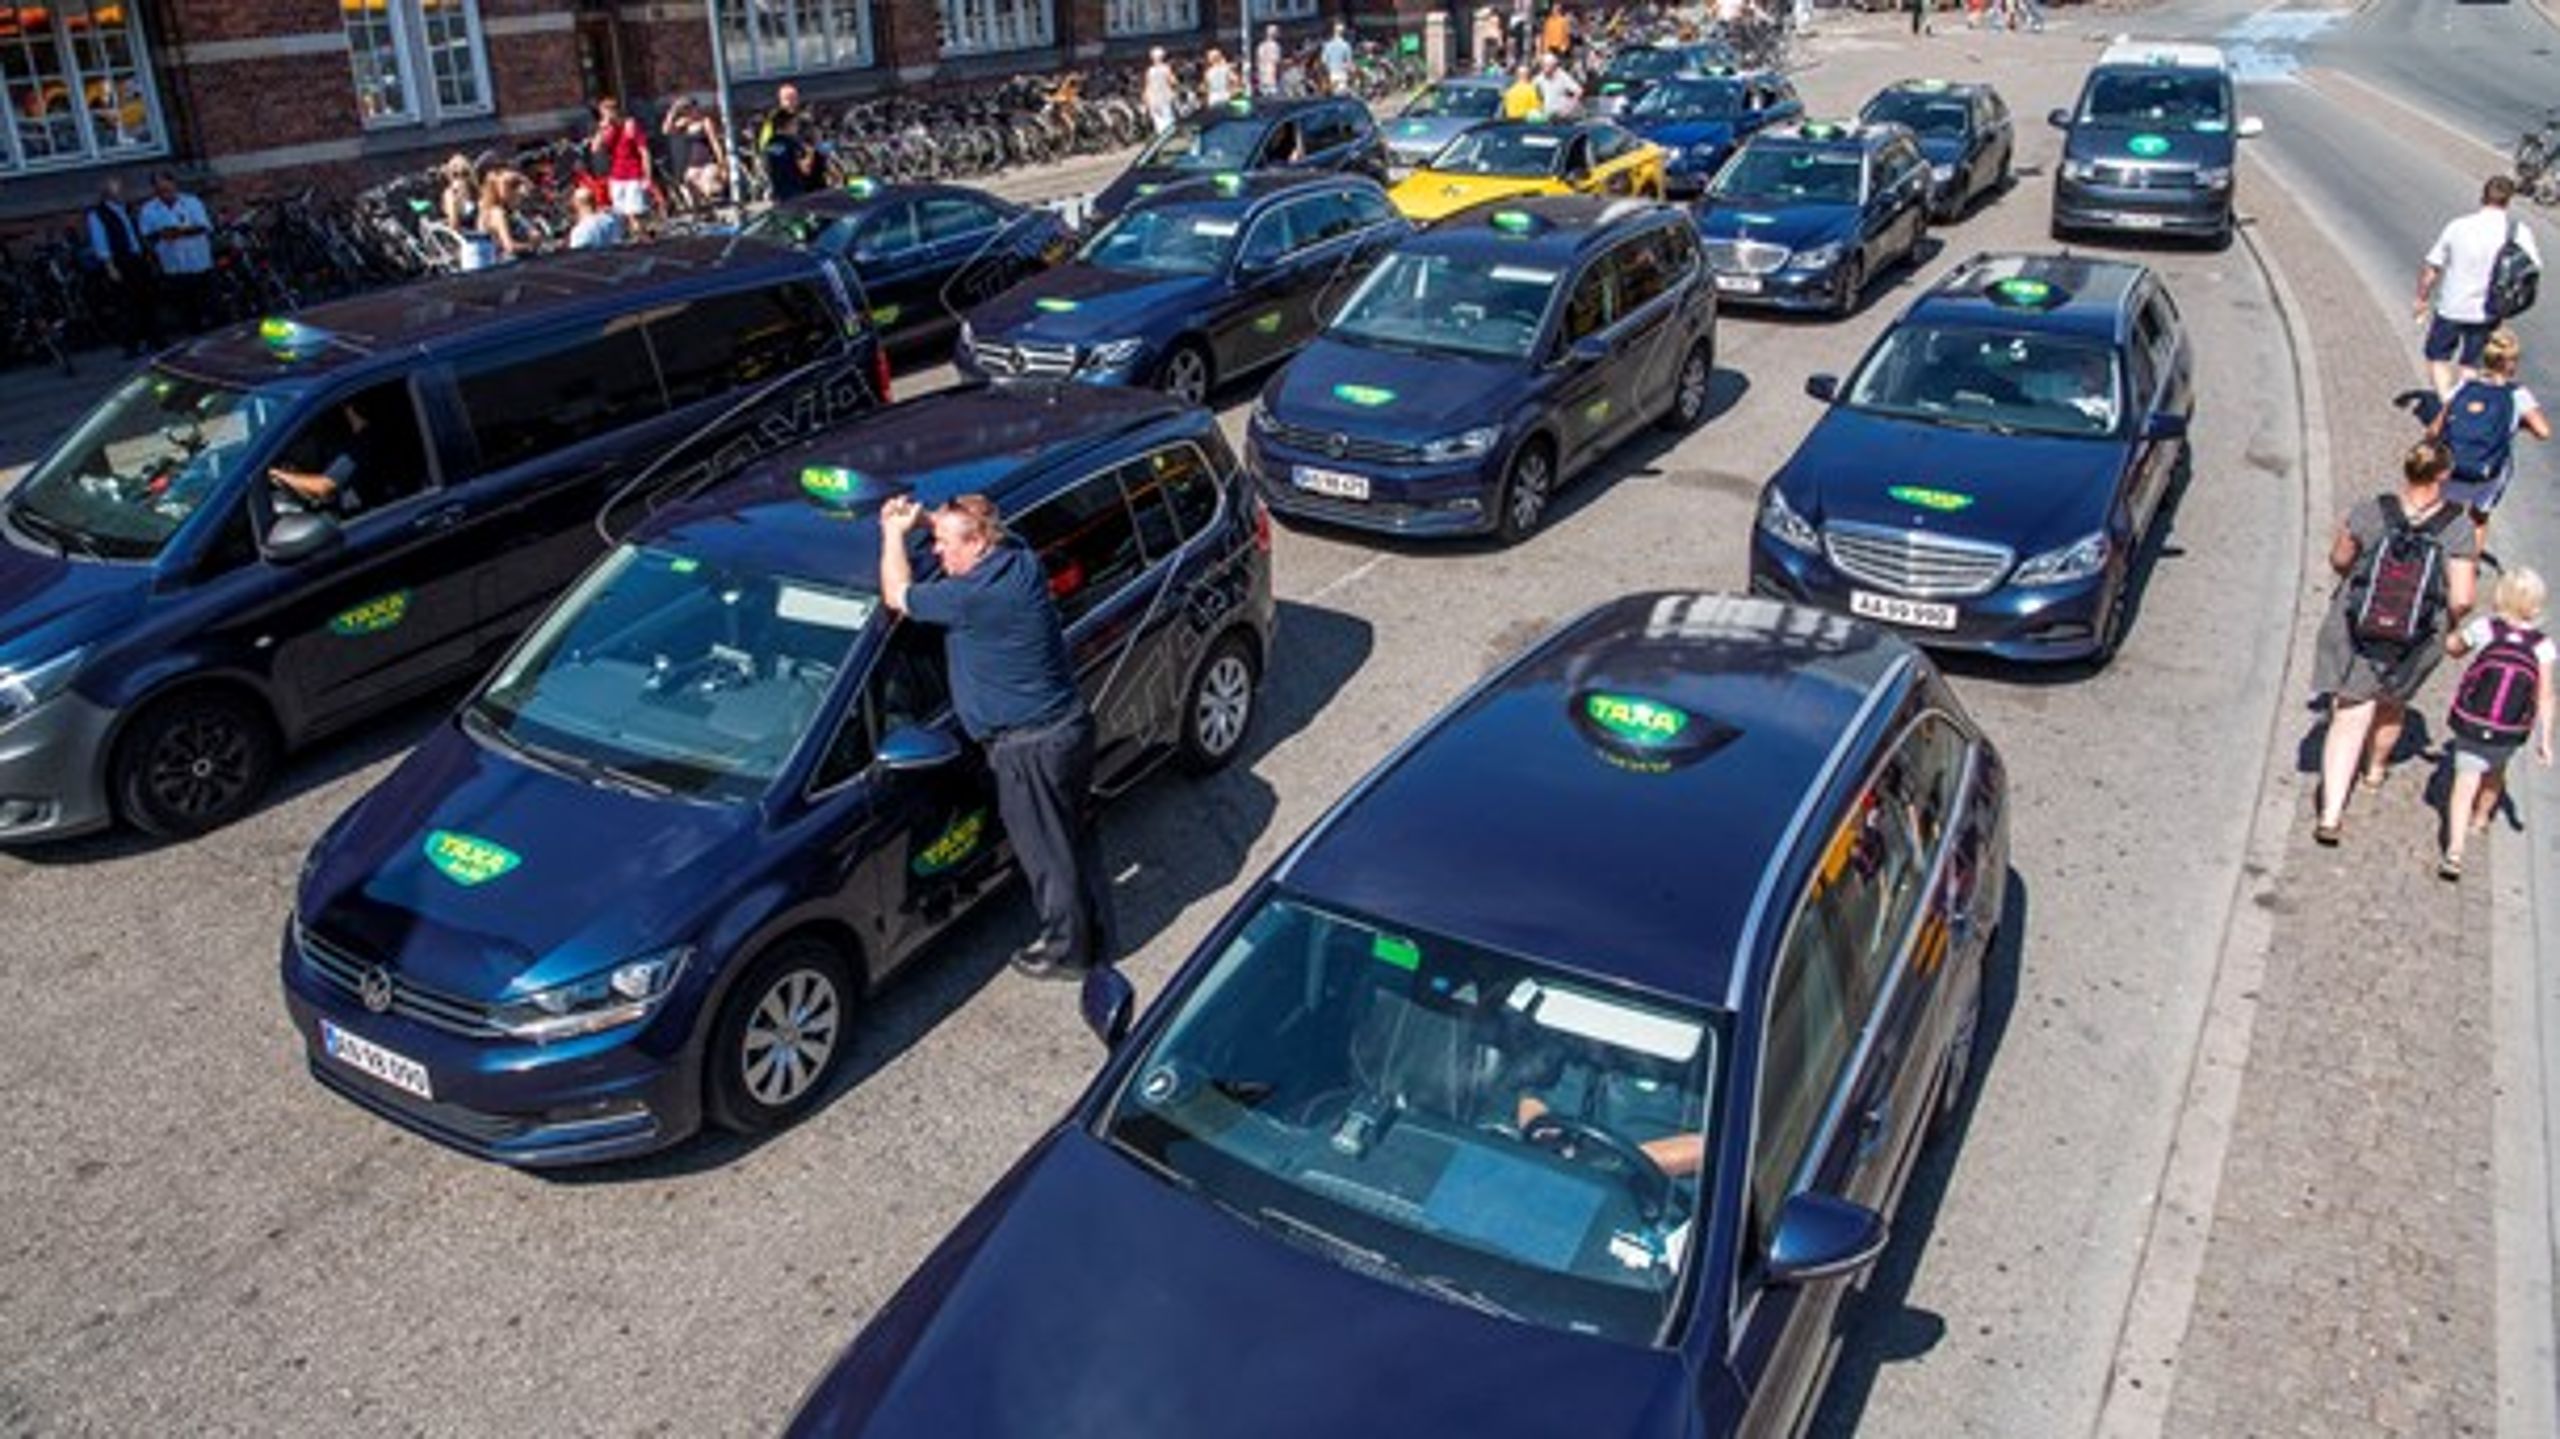 Der er kun&nbsp;ti eltaxaer på de danske veje, blandt andet&nbsp;fordi der er en&nbsp;væsentlig forskel i anskaffelsesprisen mellem en konventionel dieseltaxa og en eltaxa, mener Dansk Taxi Råd.